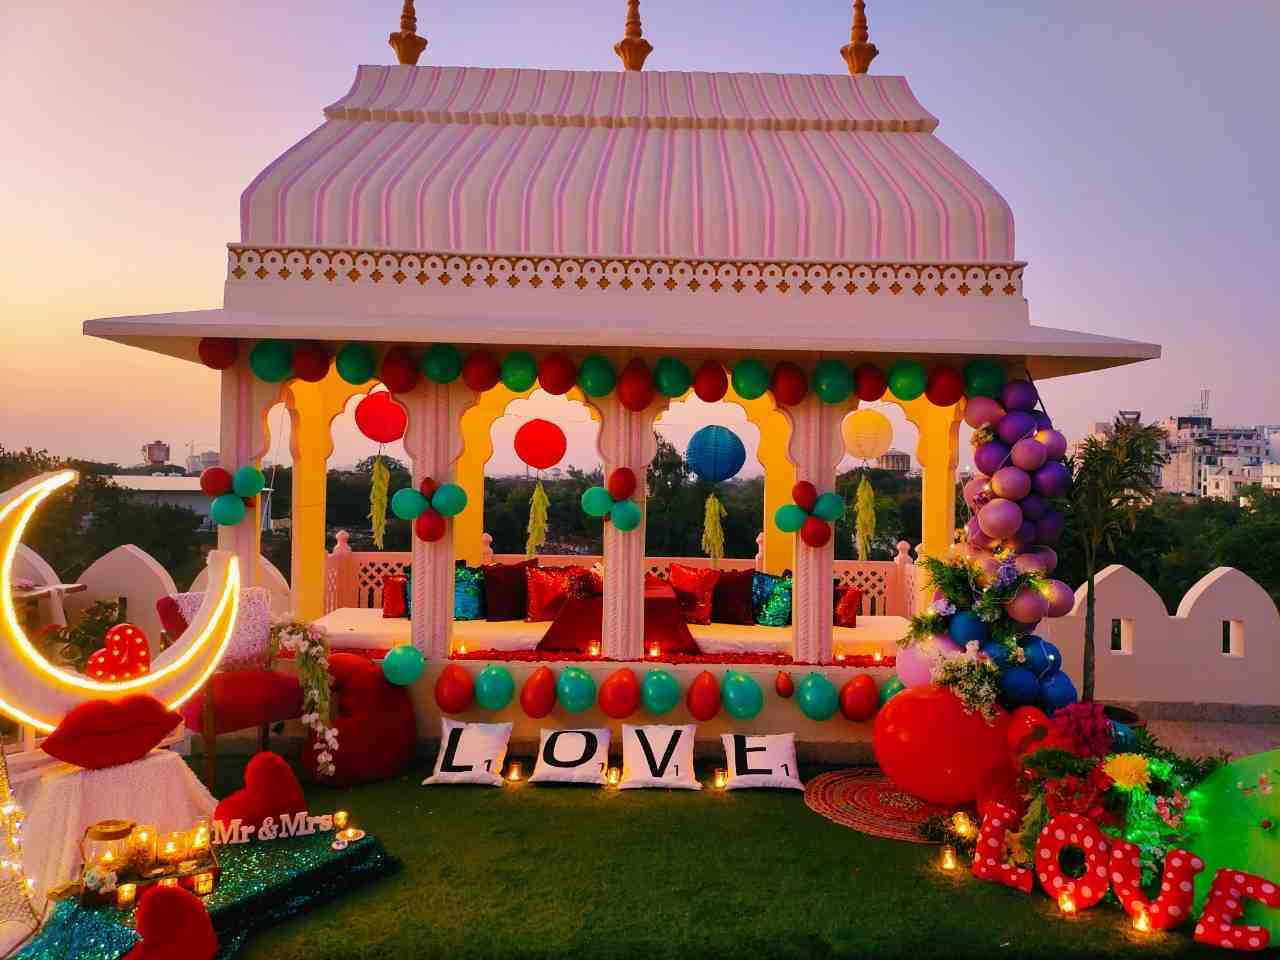 Honeymoon suite in Jaipur